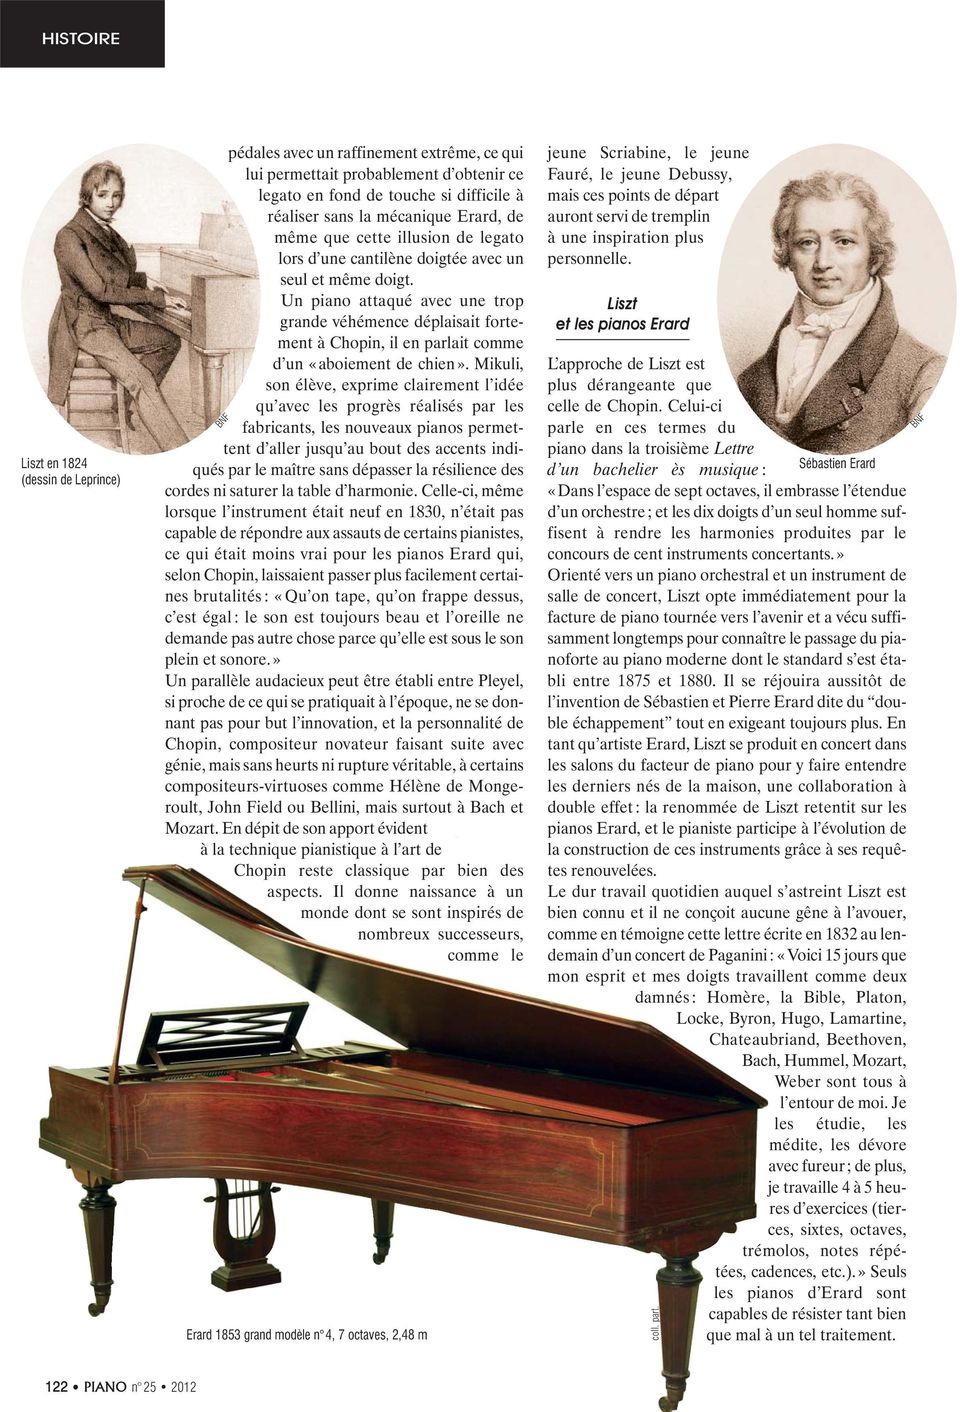 Un piano attaqué avec une trop grande véhémence déplaisait fortement à Chopin, il en parlait comme d un «aboiement de chien».